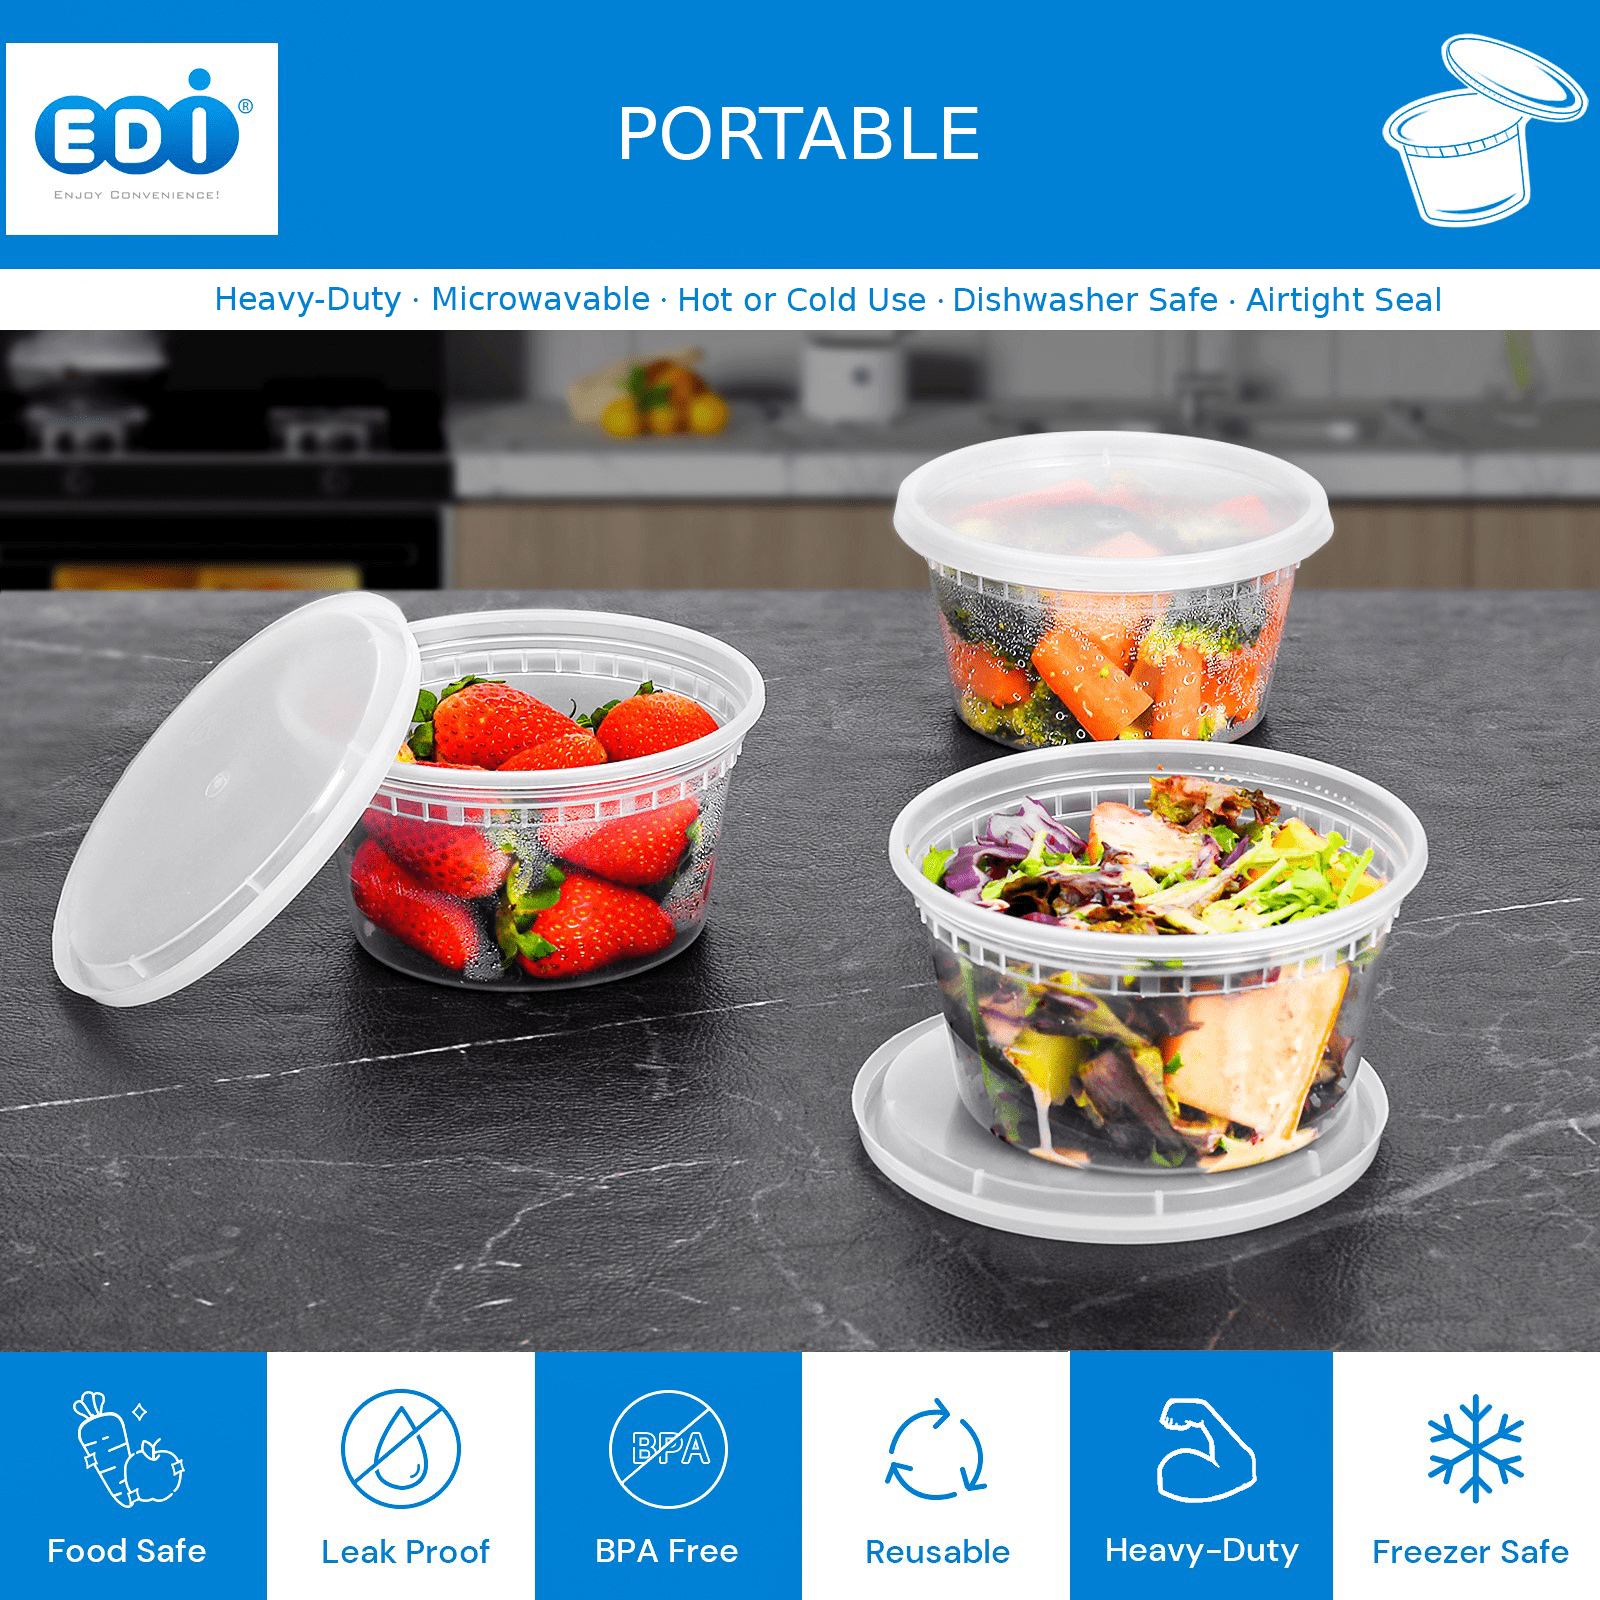 EDI-Round Deli Containers (24 oz, 50)] Plastic Deli Food Storage